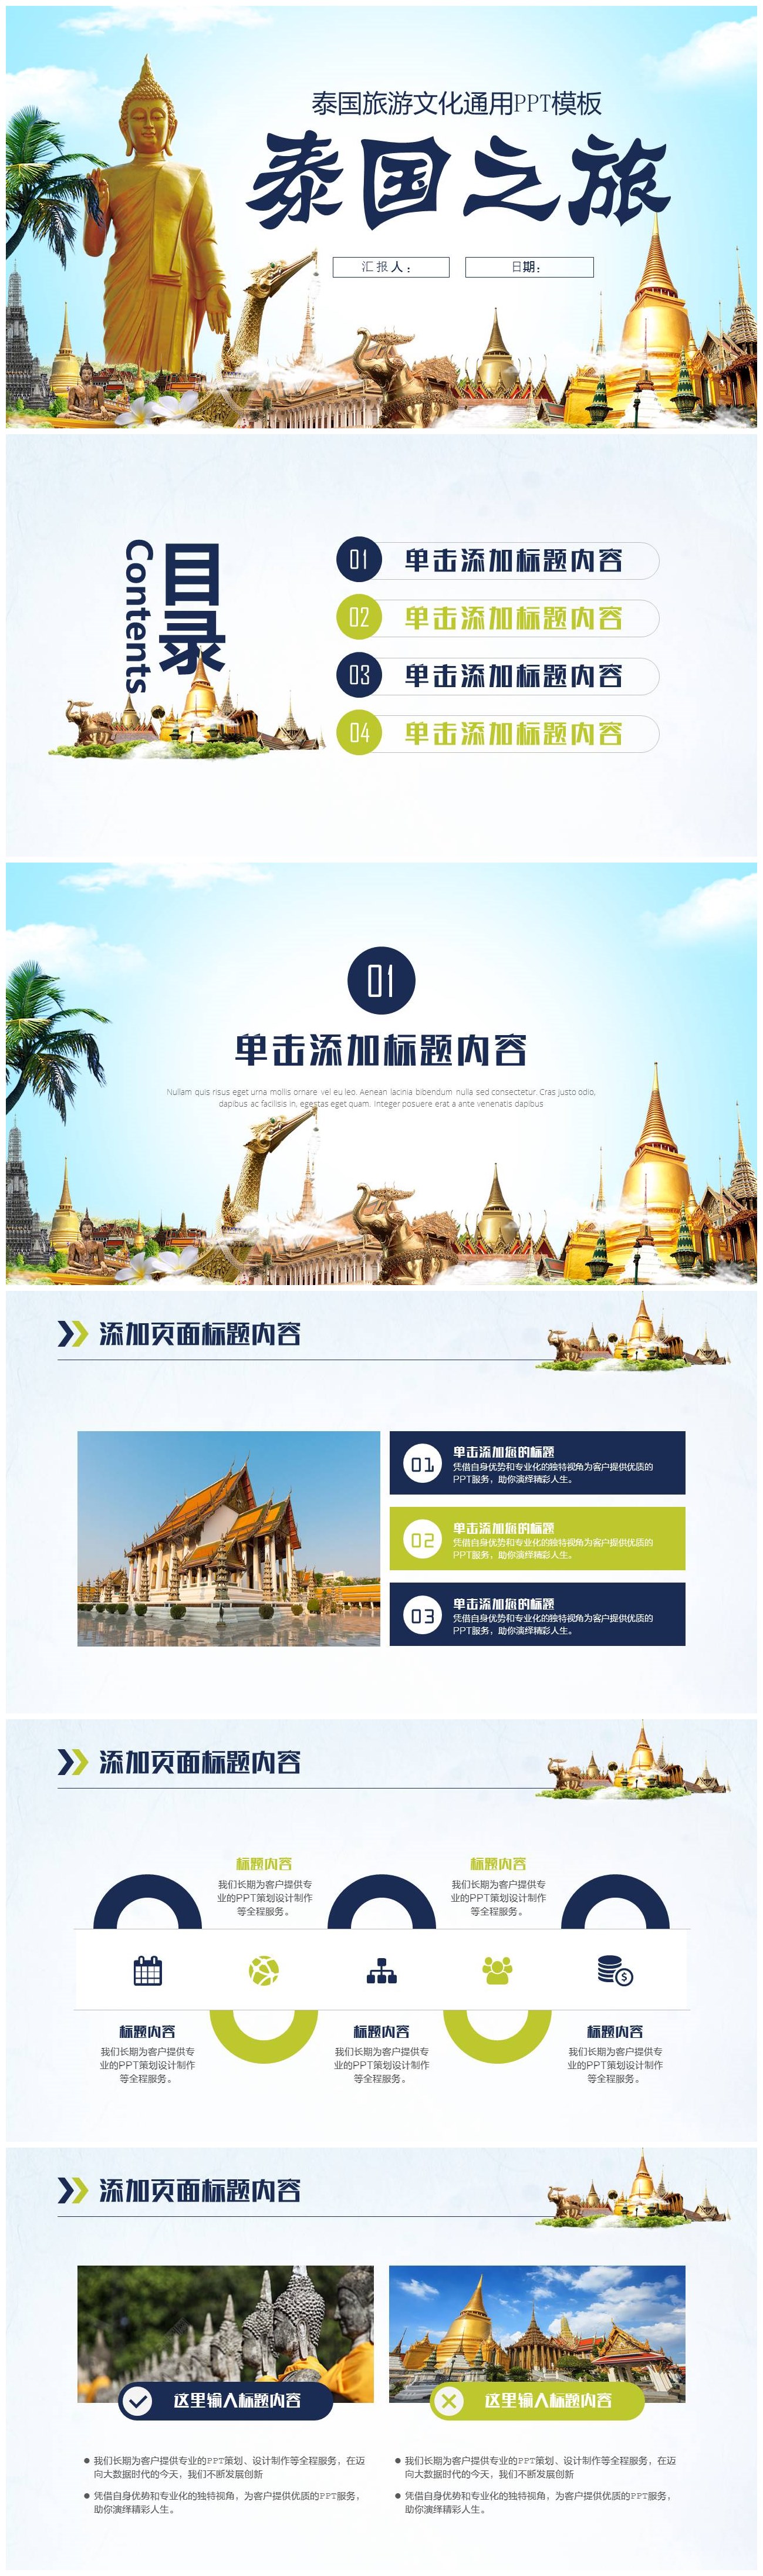 简洁大气泰国旅游文化宣传介绍通用PPT模板-聚给网